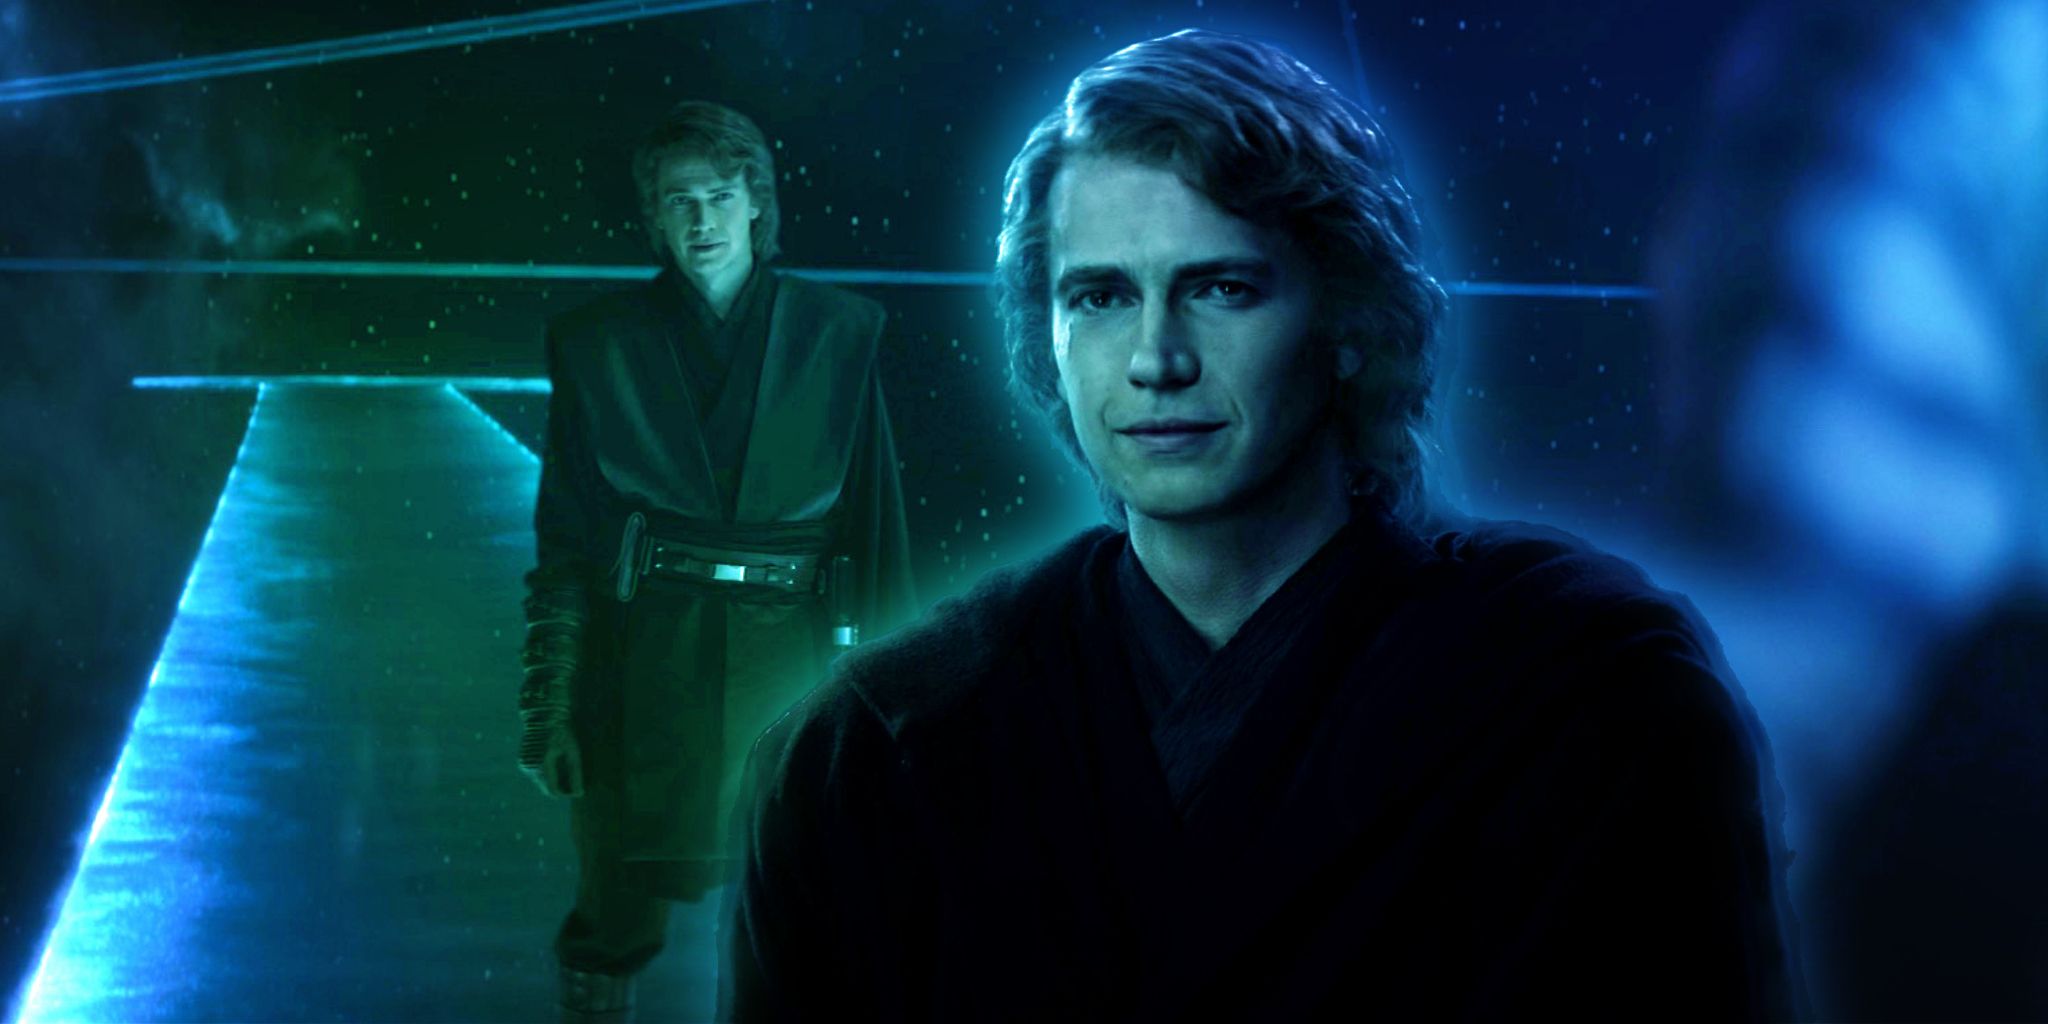 Hayden Christensen as Anakin Skywalker in the Ahsoka series.